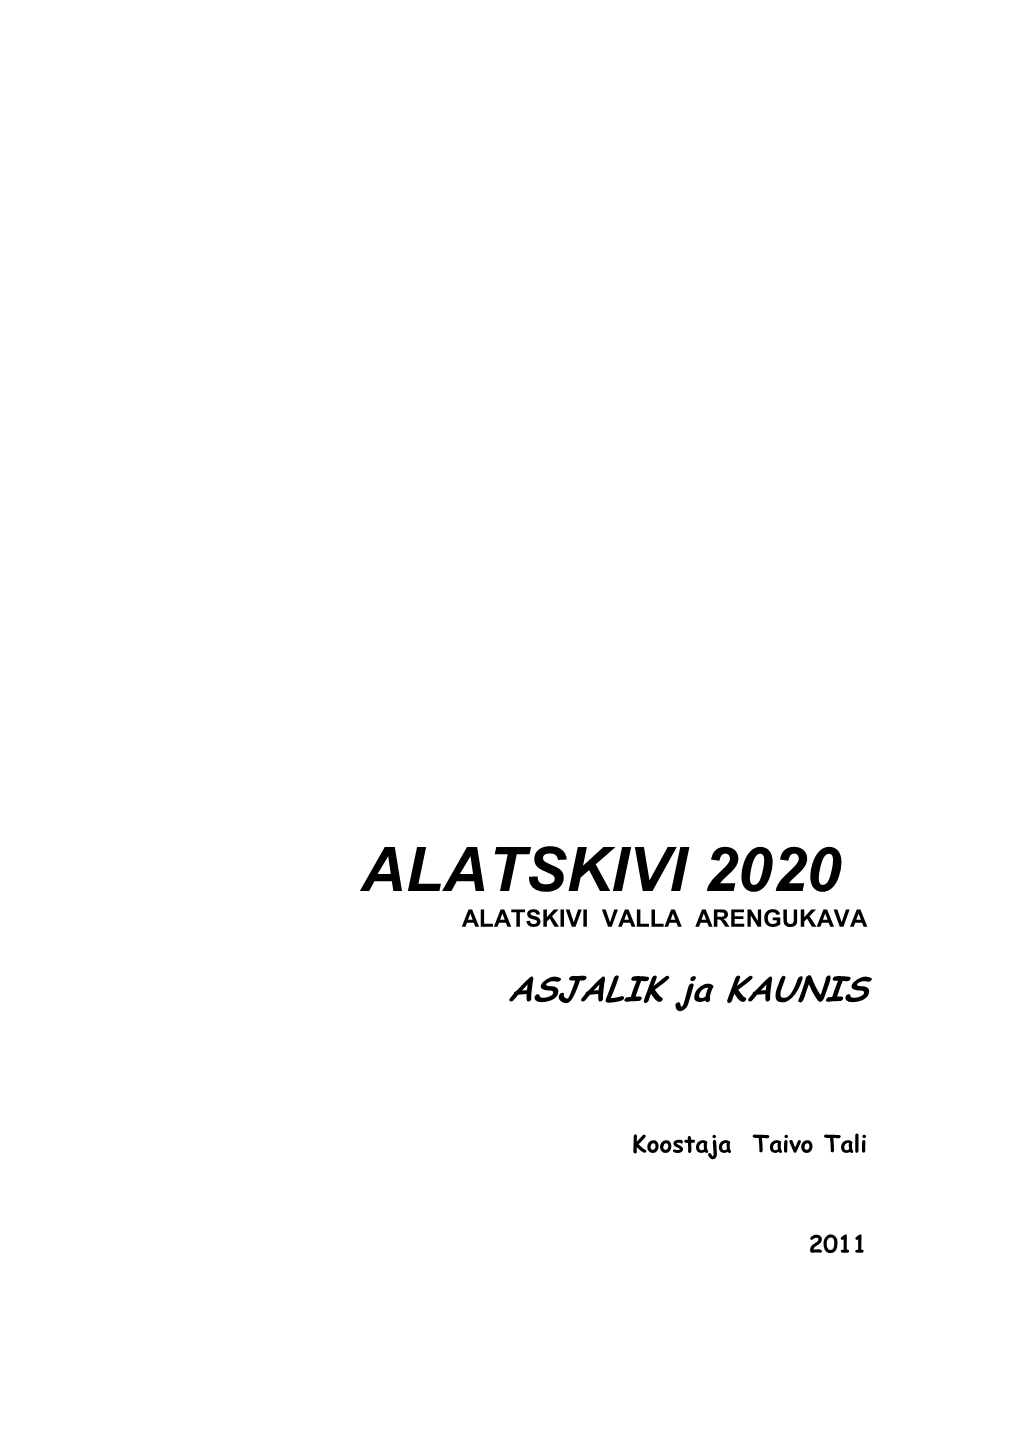 Alatskivi Valla Arengukava 2020